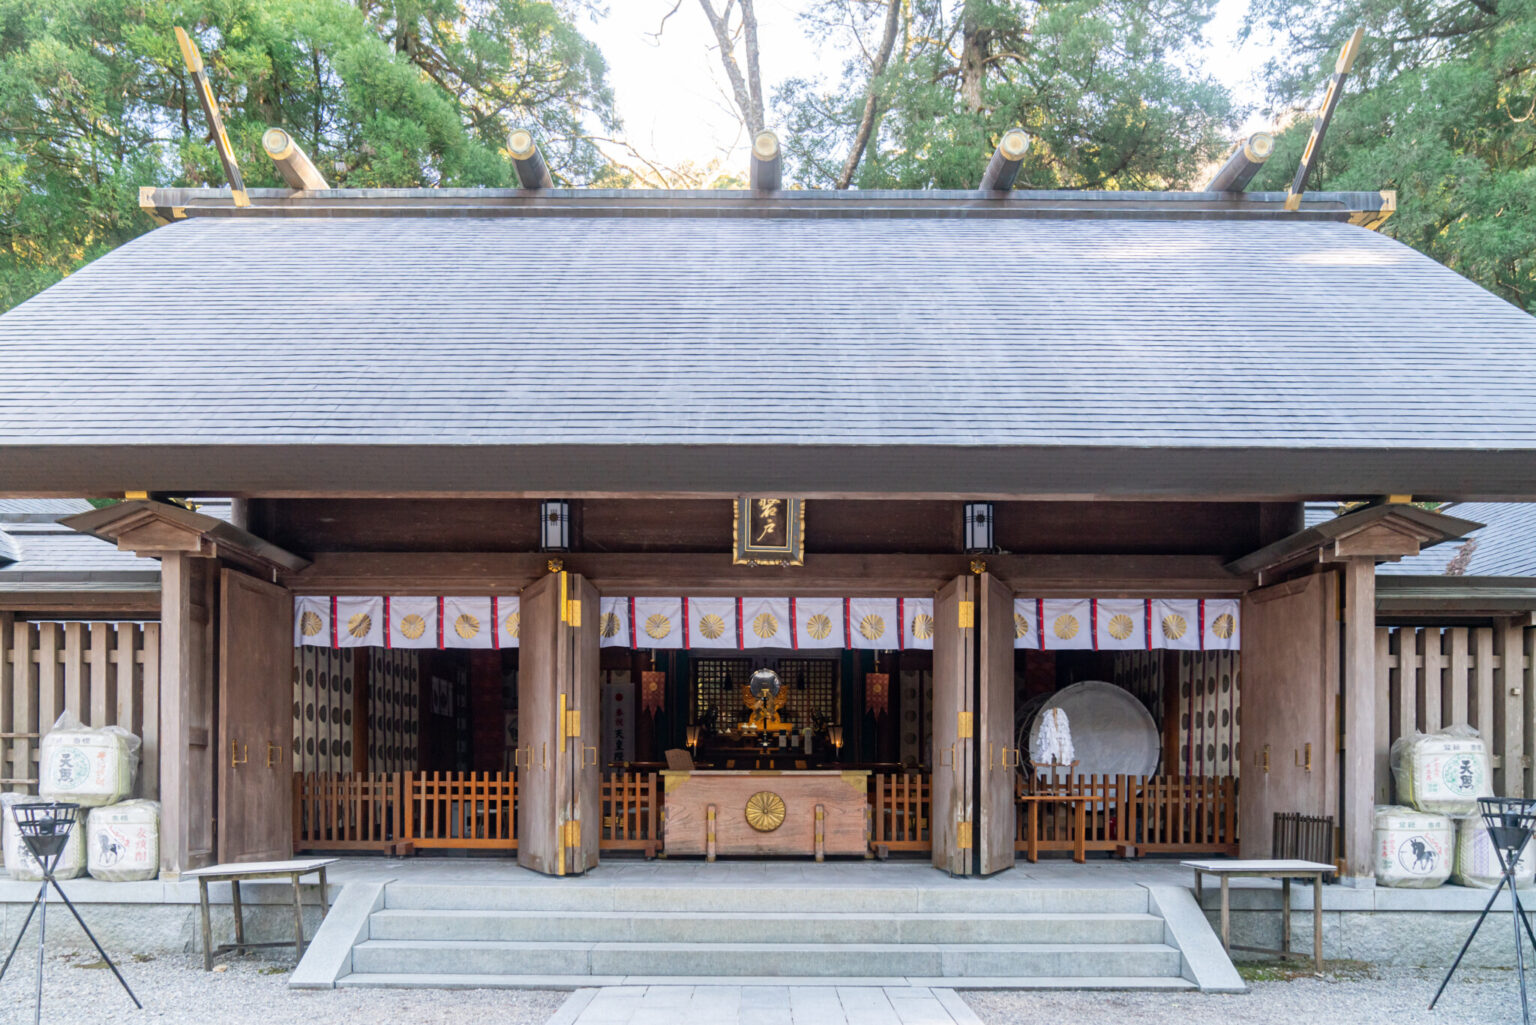 天岩戸神社は西本宮と東本宮に分かれ、こちらは西本宮の拝殿。神職の案内で裏手に回れば、天岩戸を遠くに見ることができる。